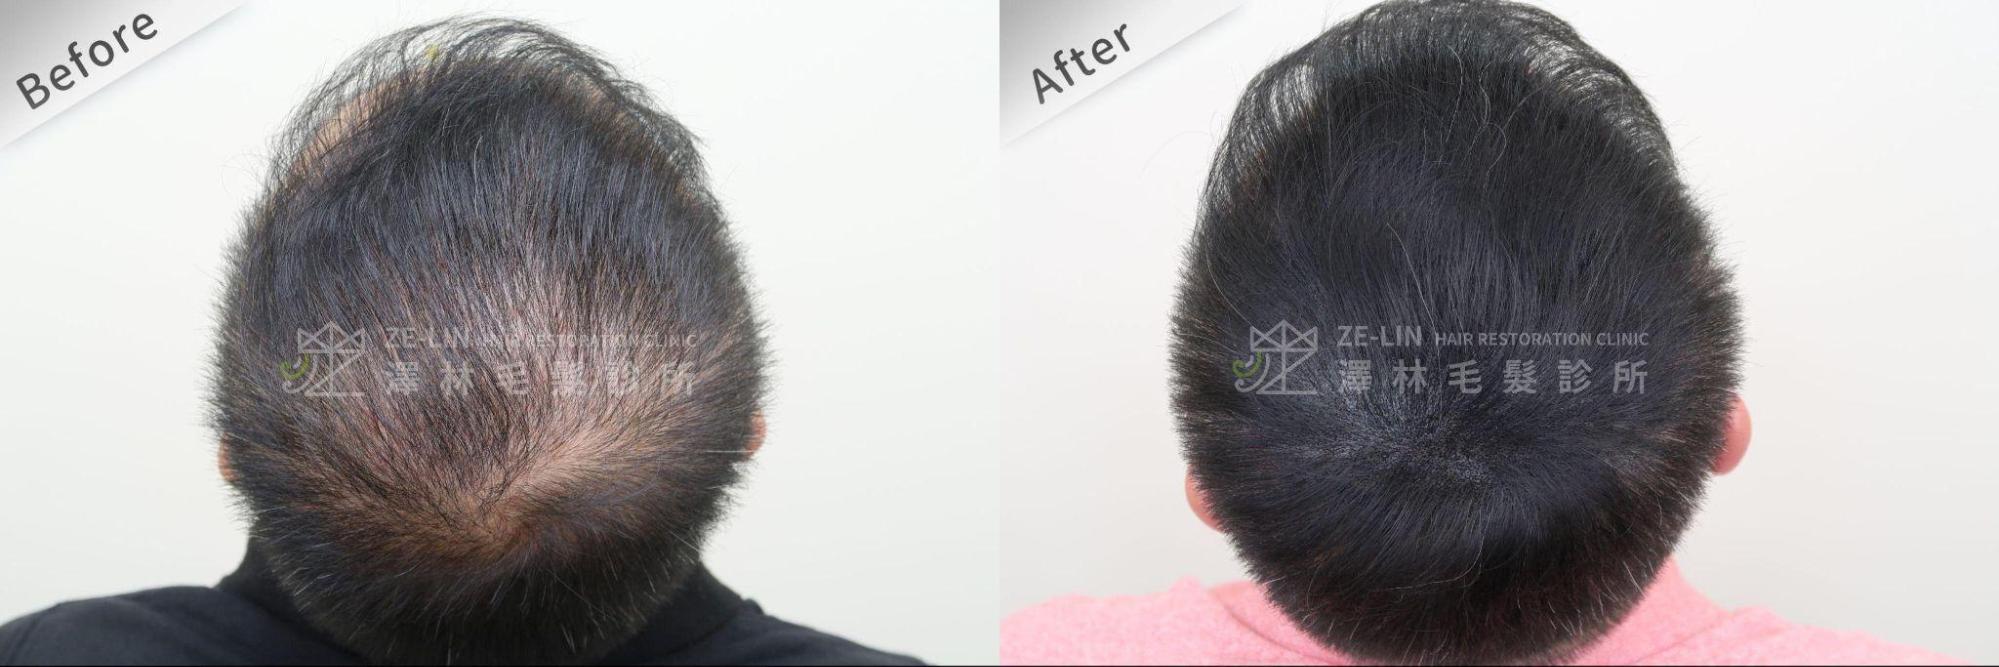 紋髮治療可作出擬似髮根的效果